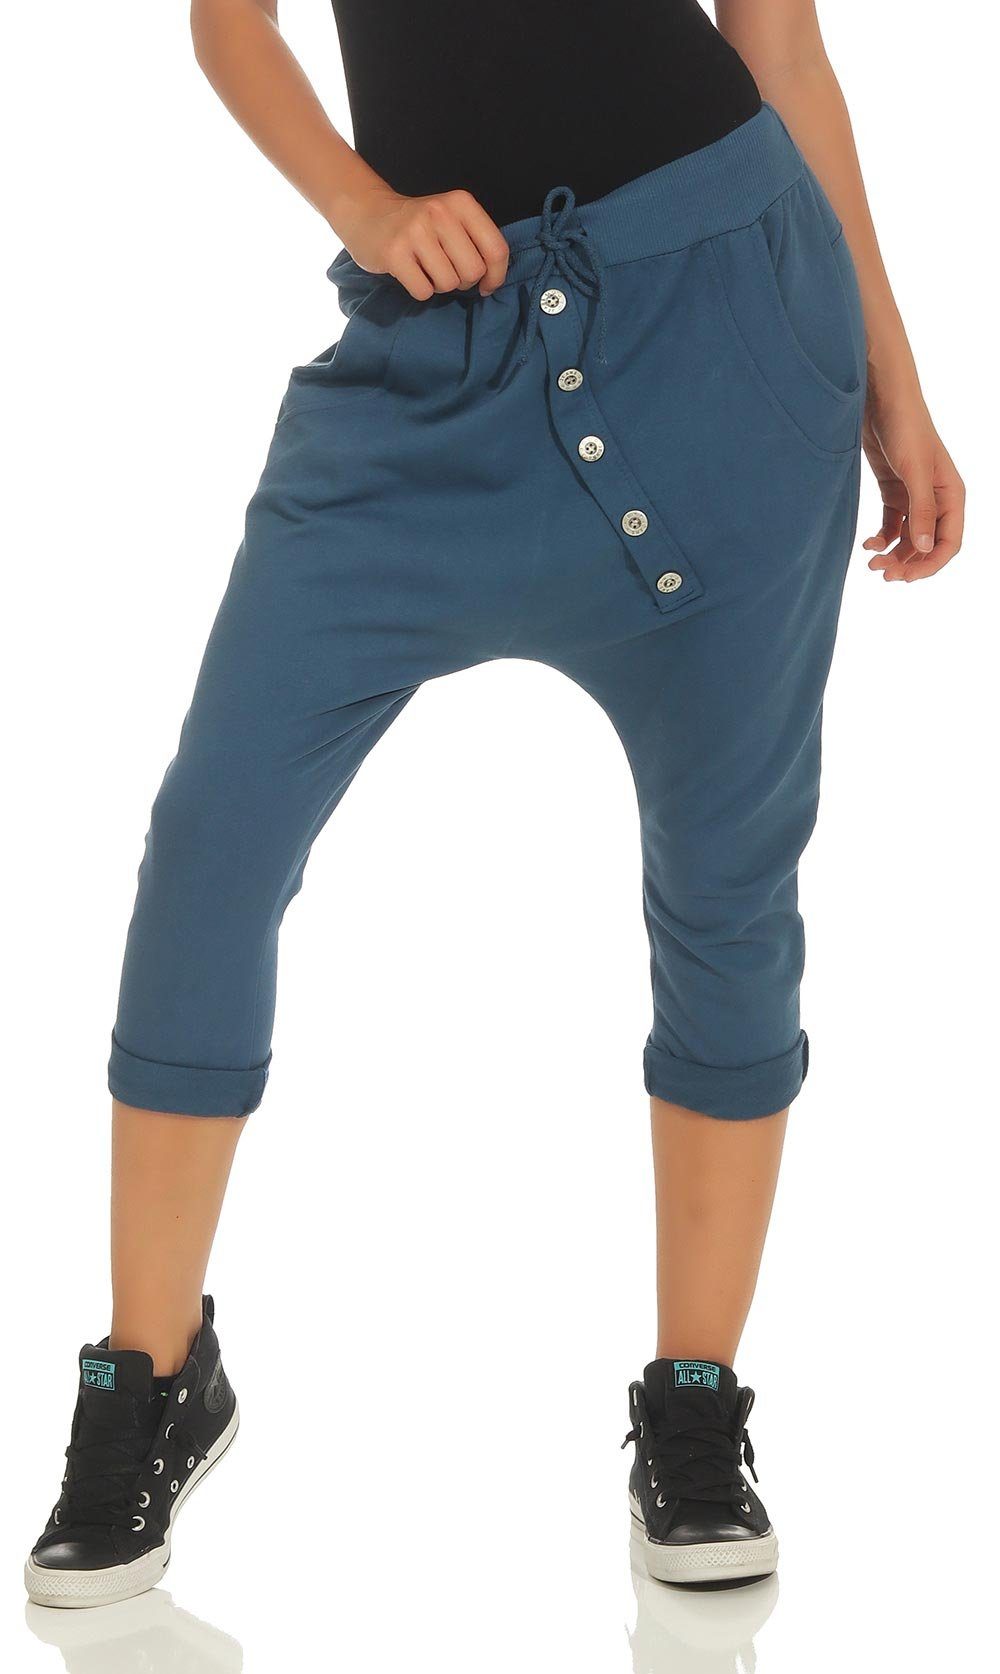 Sommer Einheitsgröße Jerseybund 8015 Sport more jeansblau mit elastischem malito Caprihose Hose fashion than